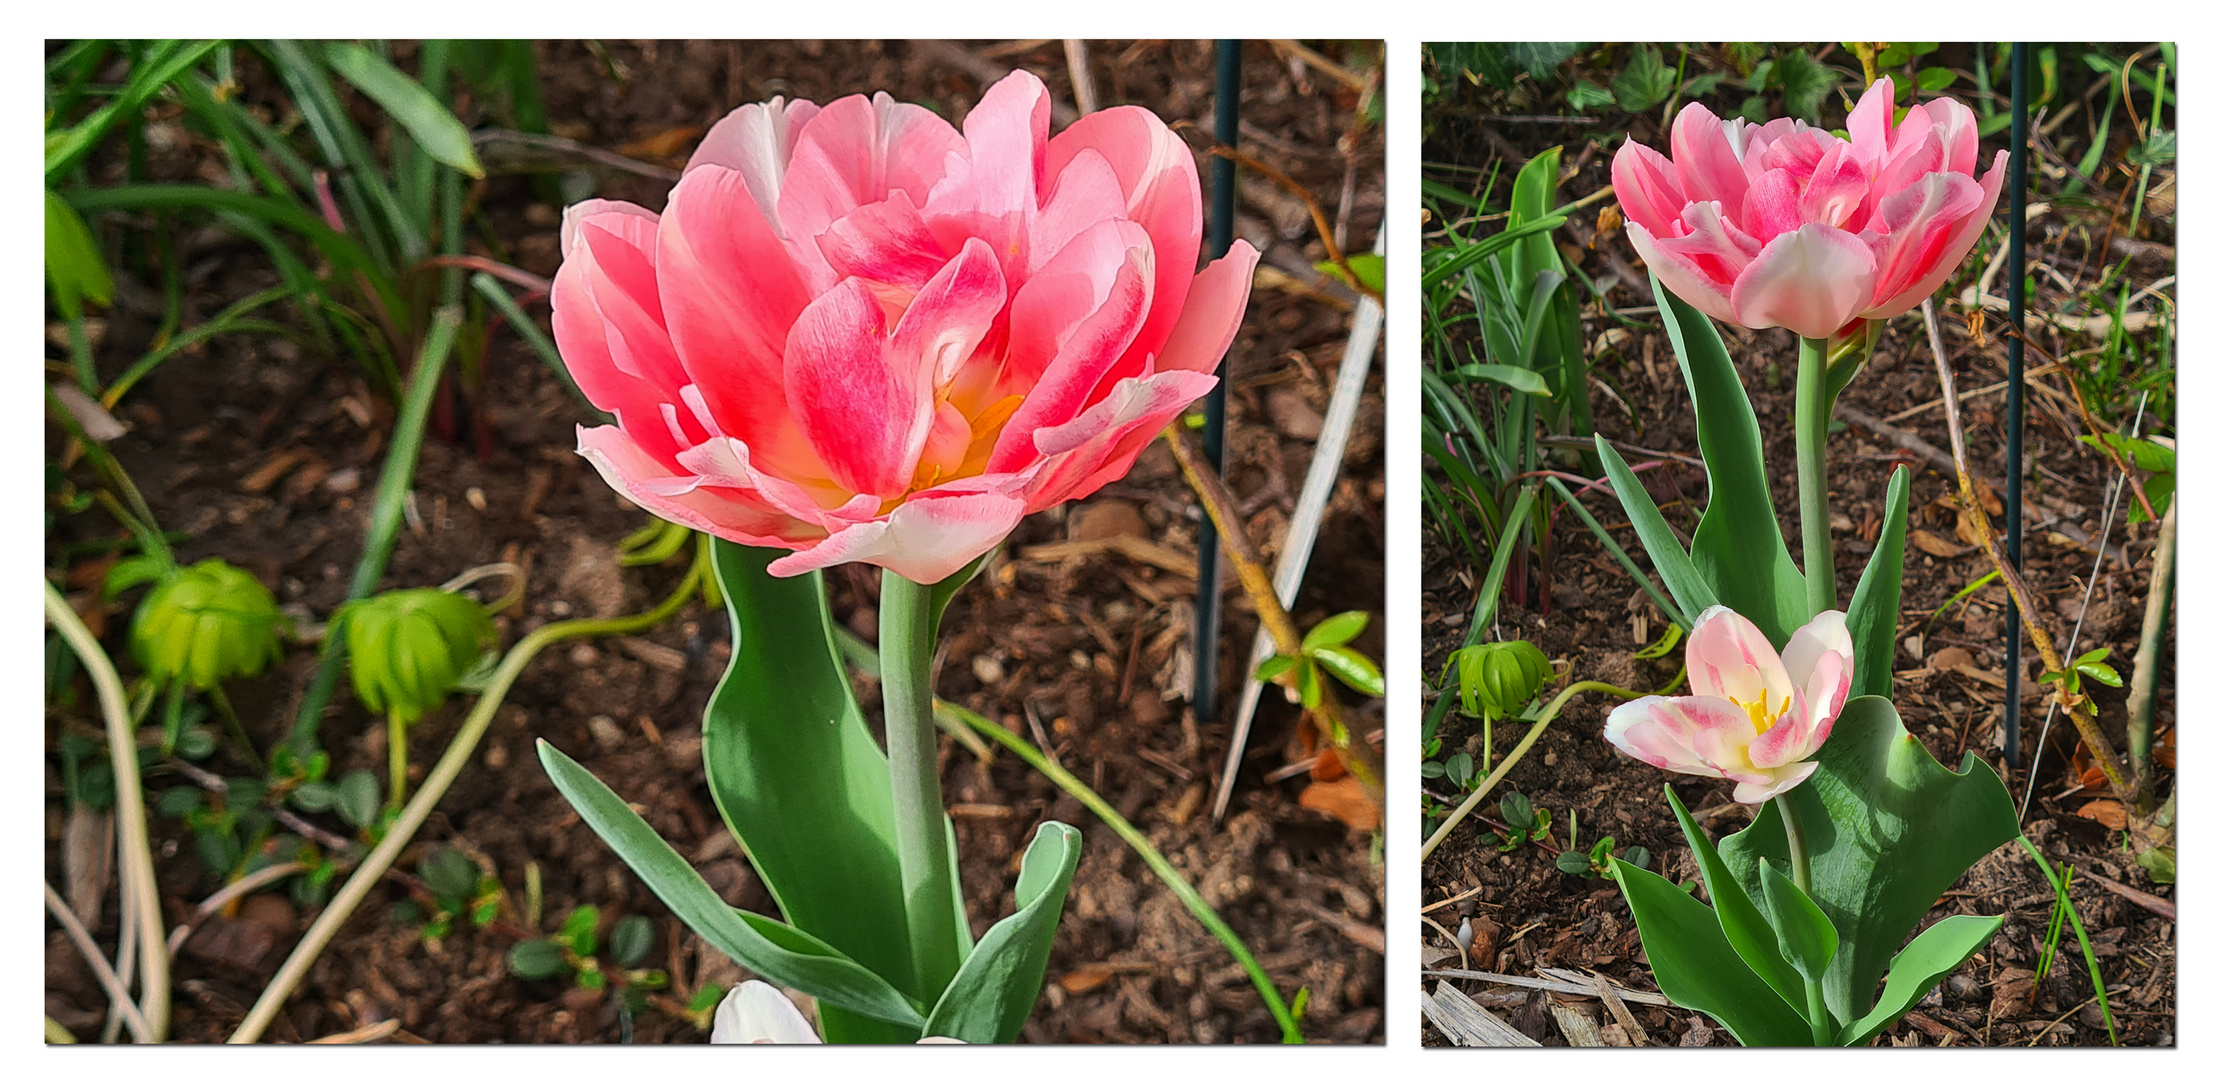 Blütezeit der Tulpen